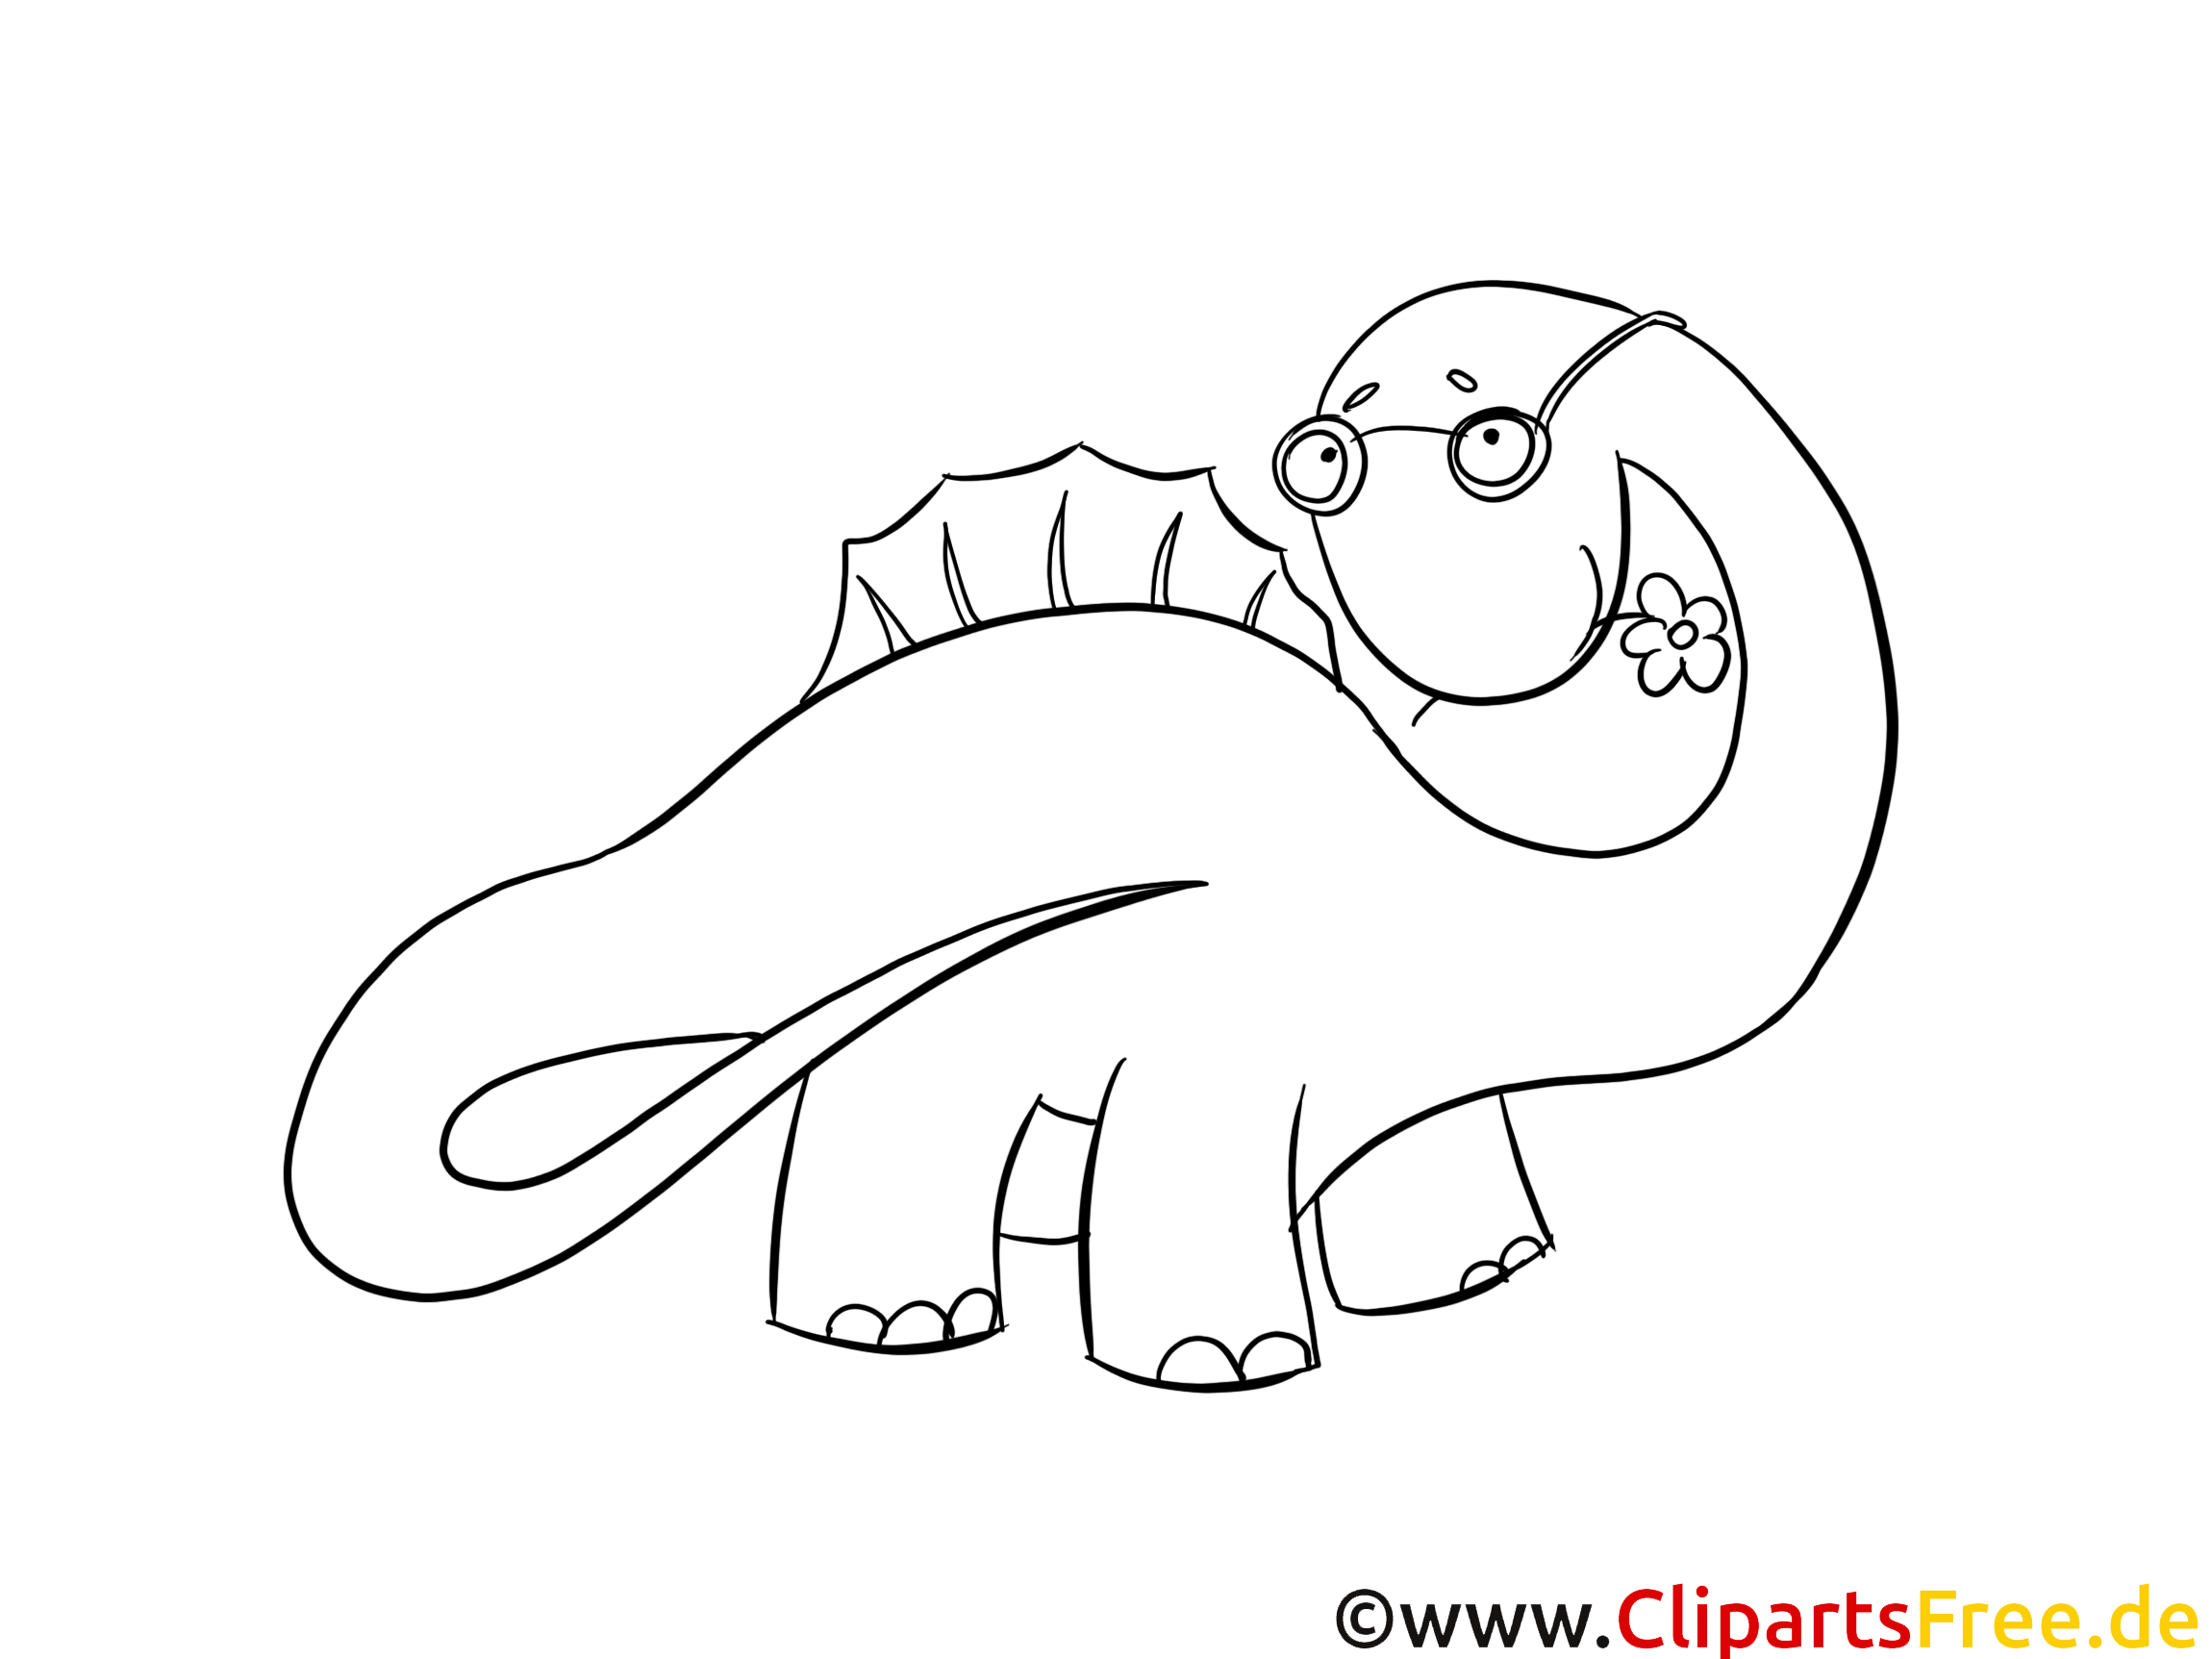 Dinosaures à colorier images gratuites